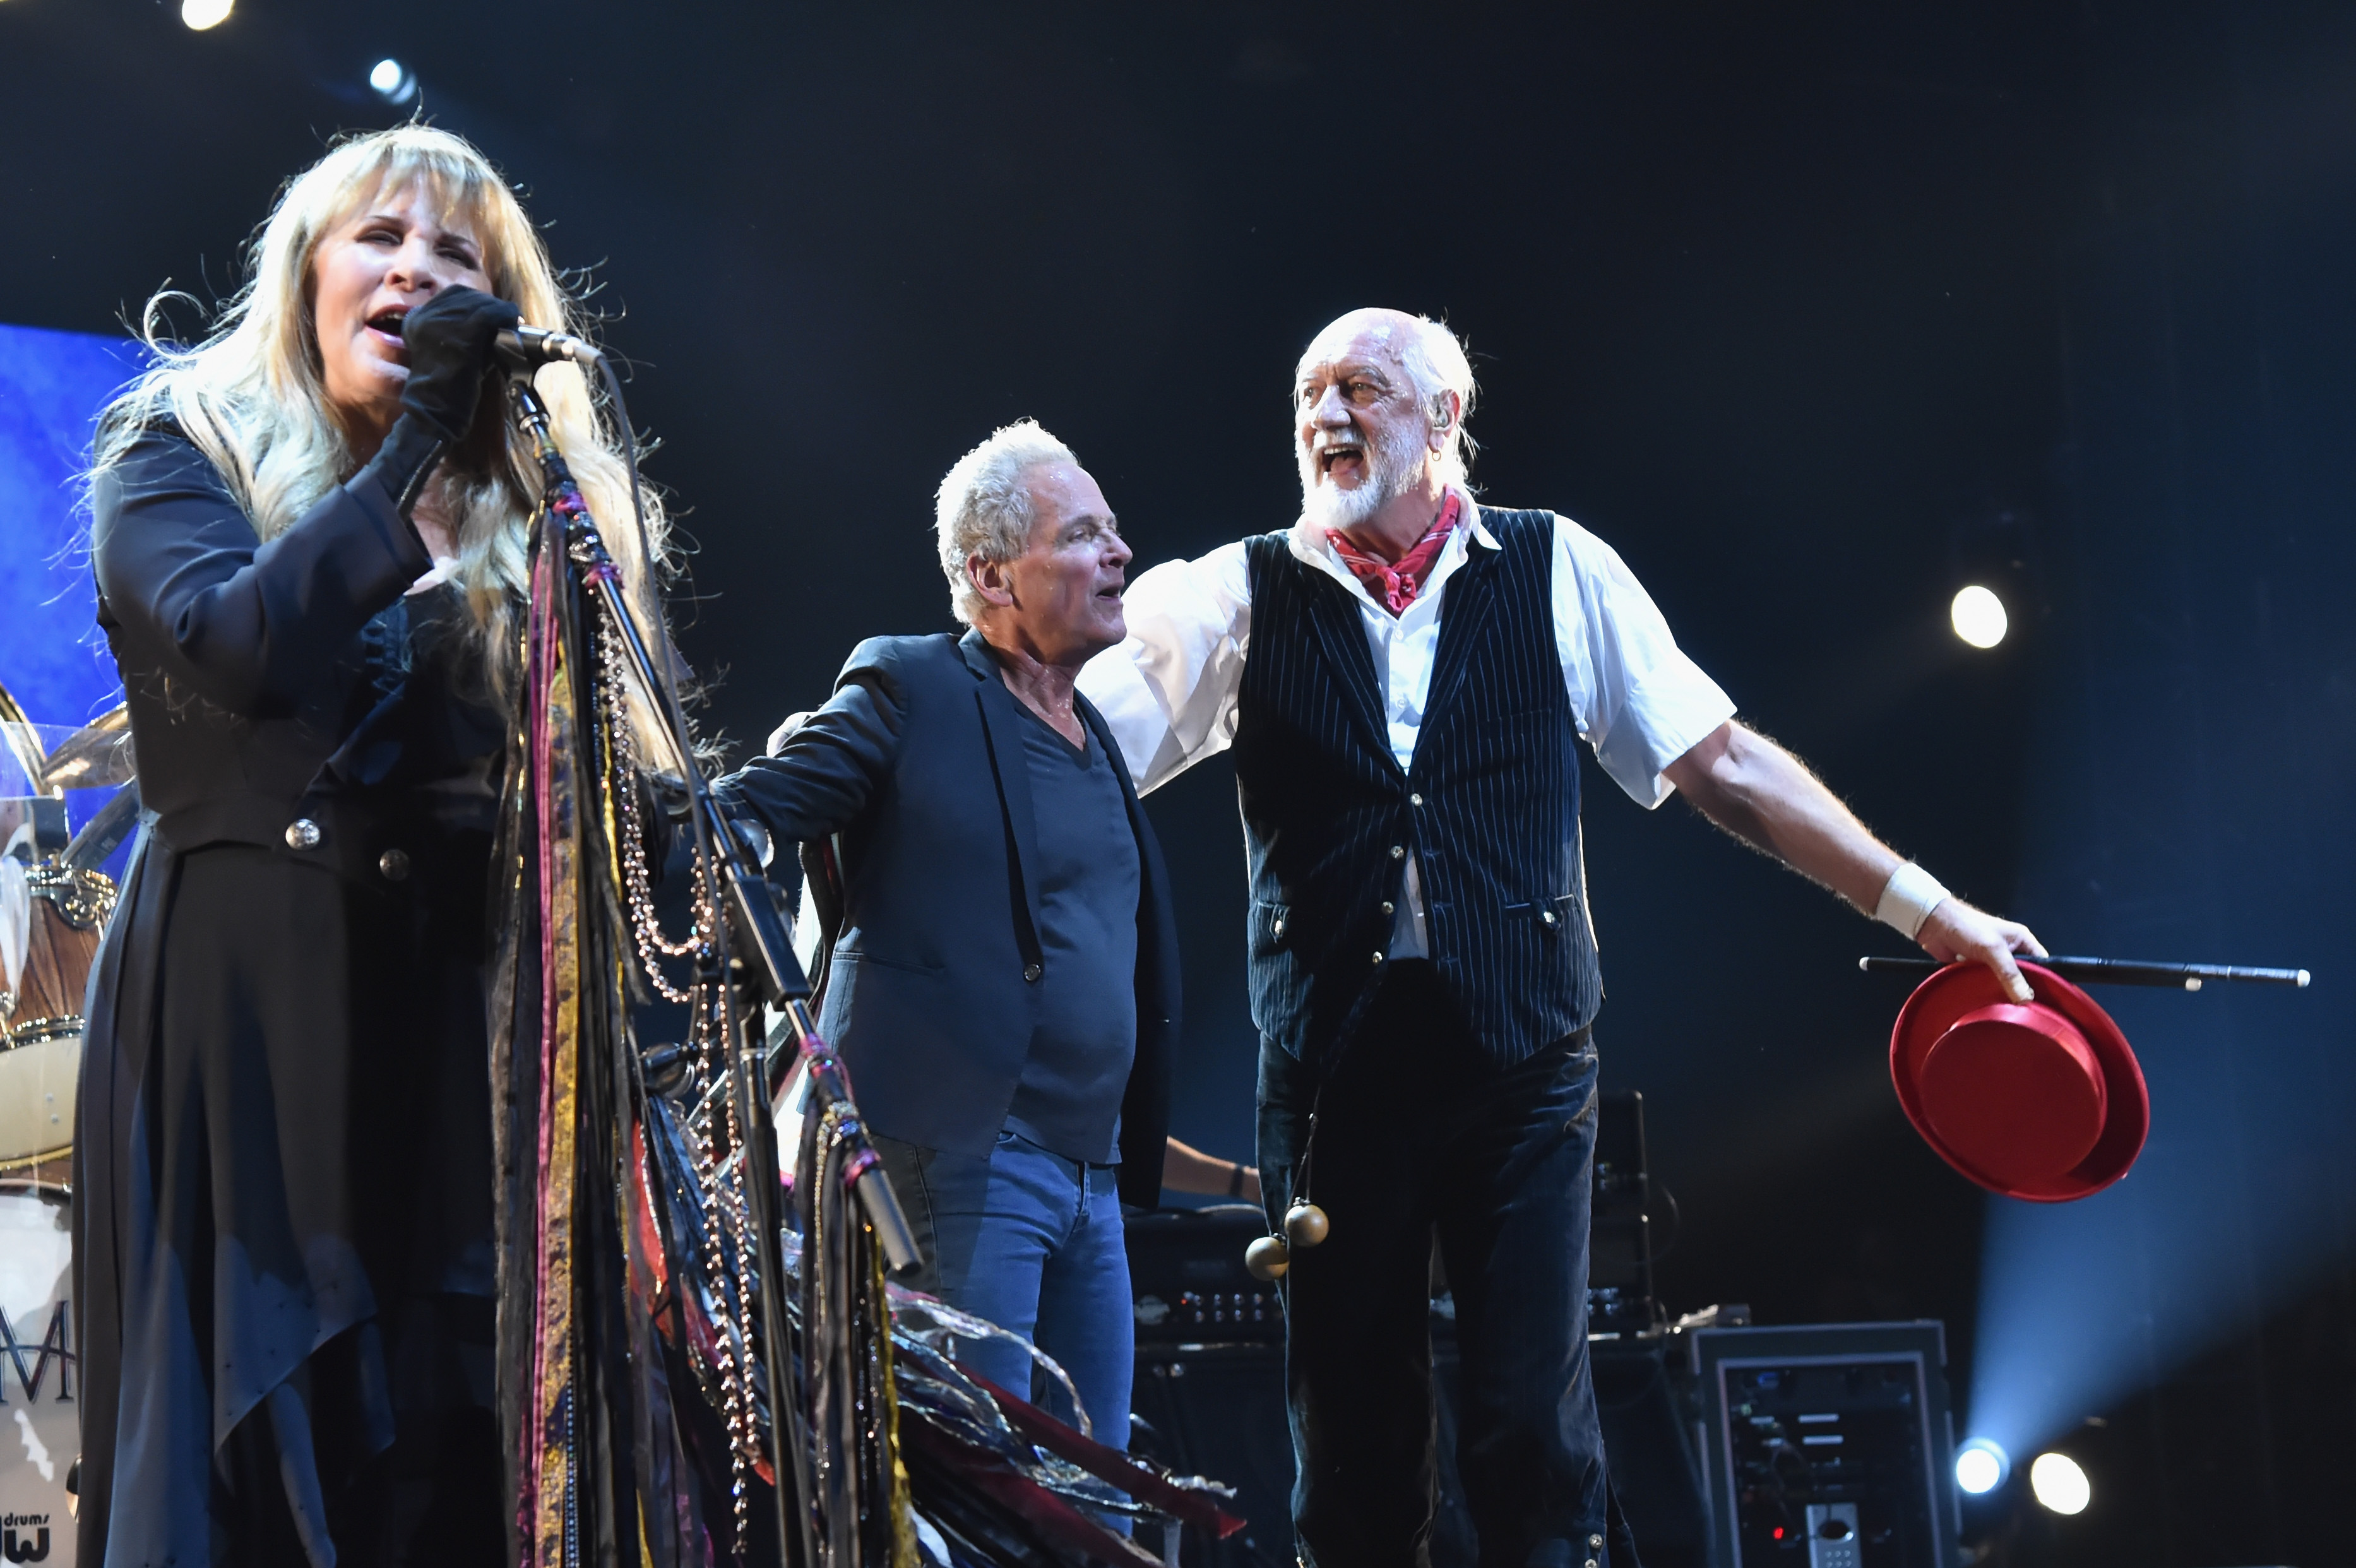 Stevie Nicks sings alongside Lindsey Buckingham and Mick Fleetwood onstage.